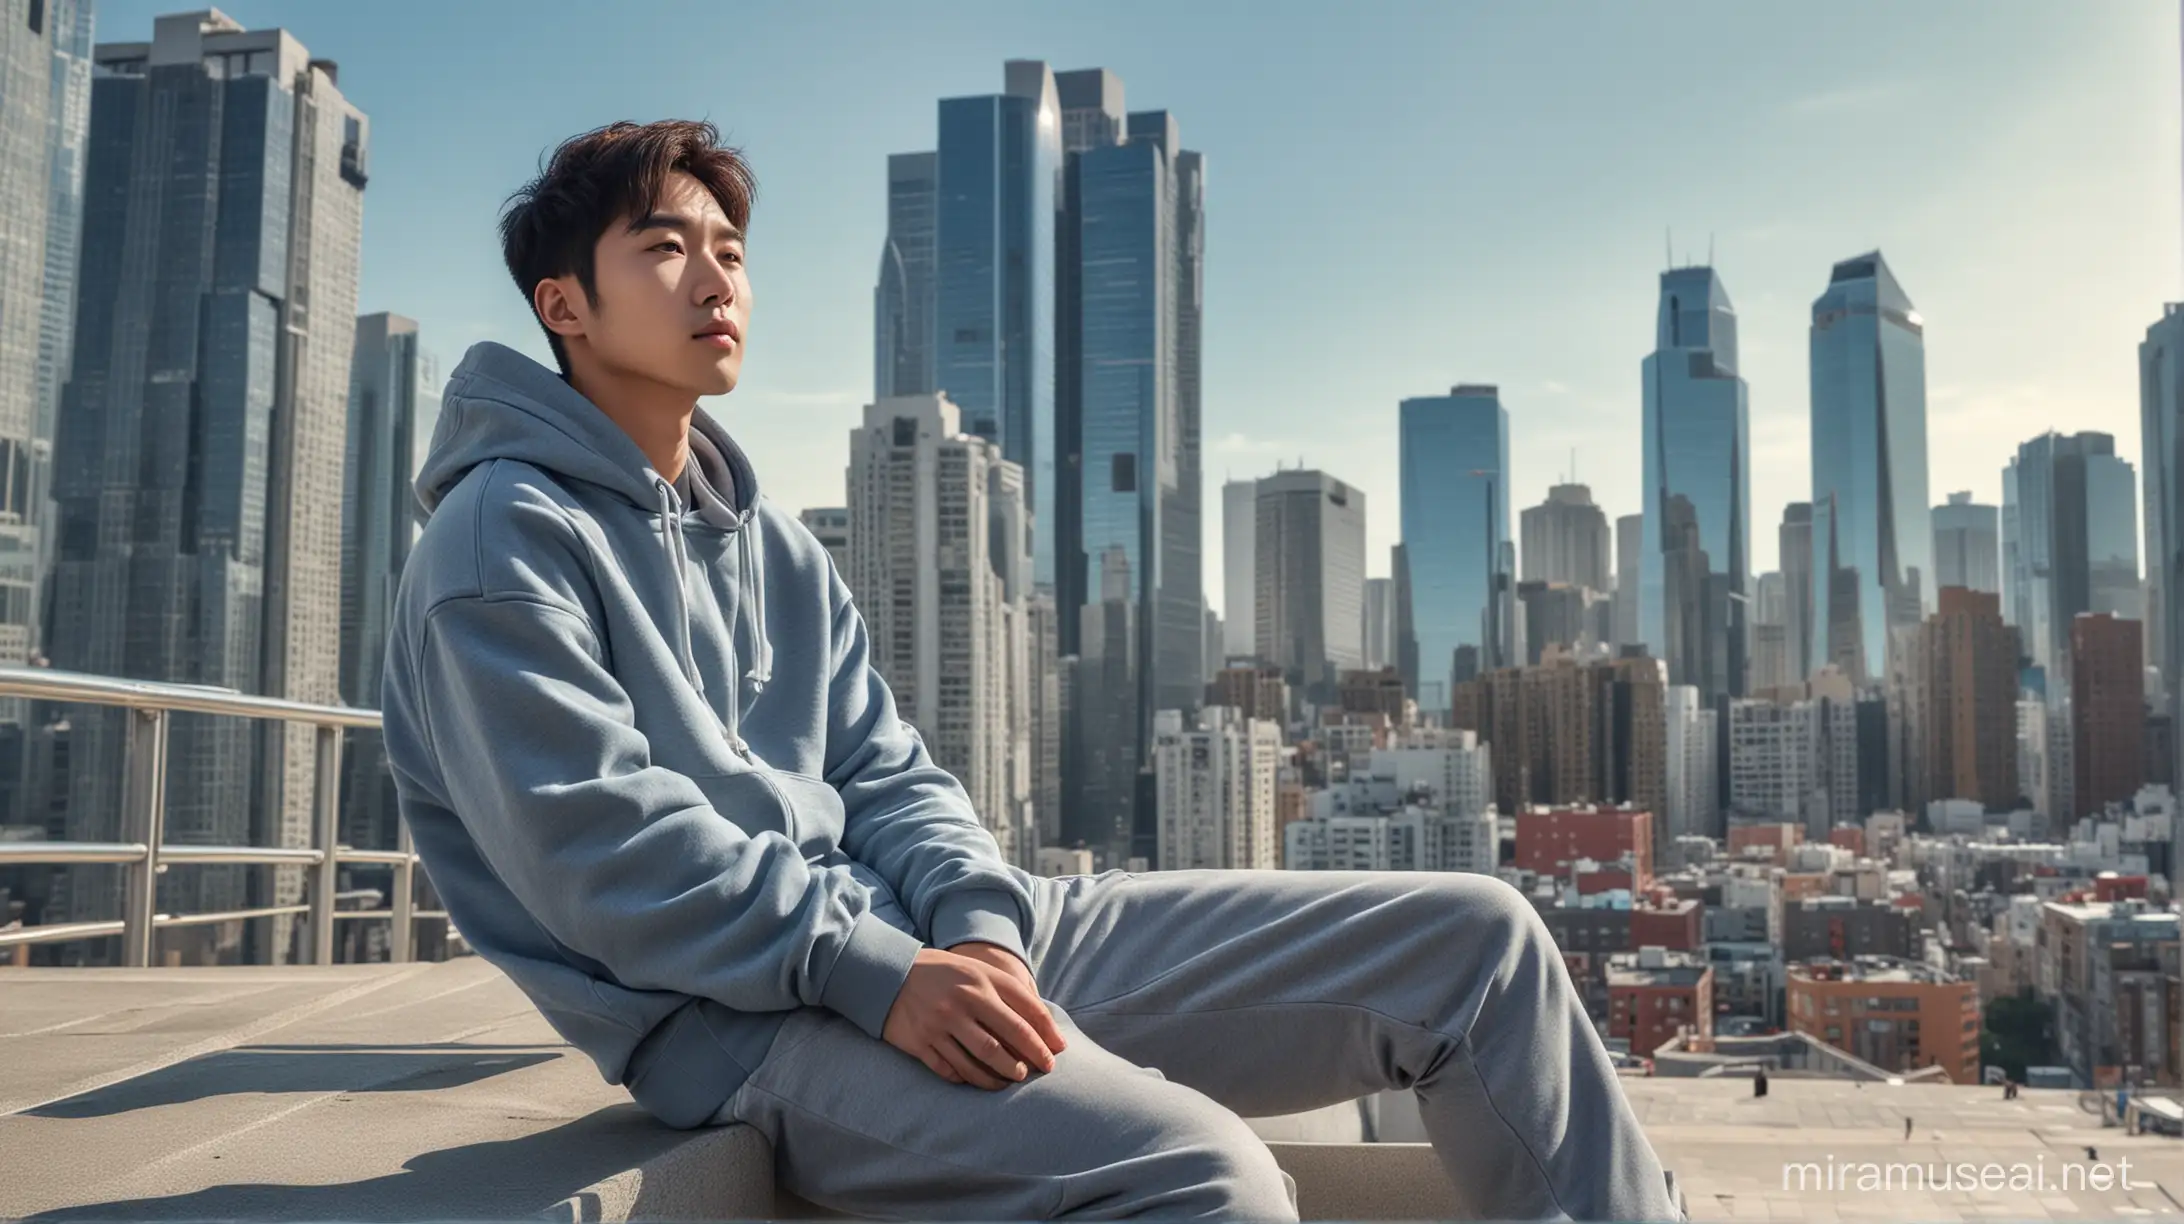 seorang pria Korea tampan duduk di atas langkan sebuah gedung tinggi, memandang ke arah kota. pria memakai jaket Hoodie Pria ini dikelilingi oleh pemandangan kota dengan gedung pencakar langit, awan biru yg cerah dan bangunan lain sebagai latar belakangnya,pose dinamis, realistis ultra HDR